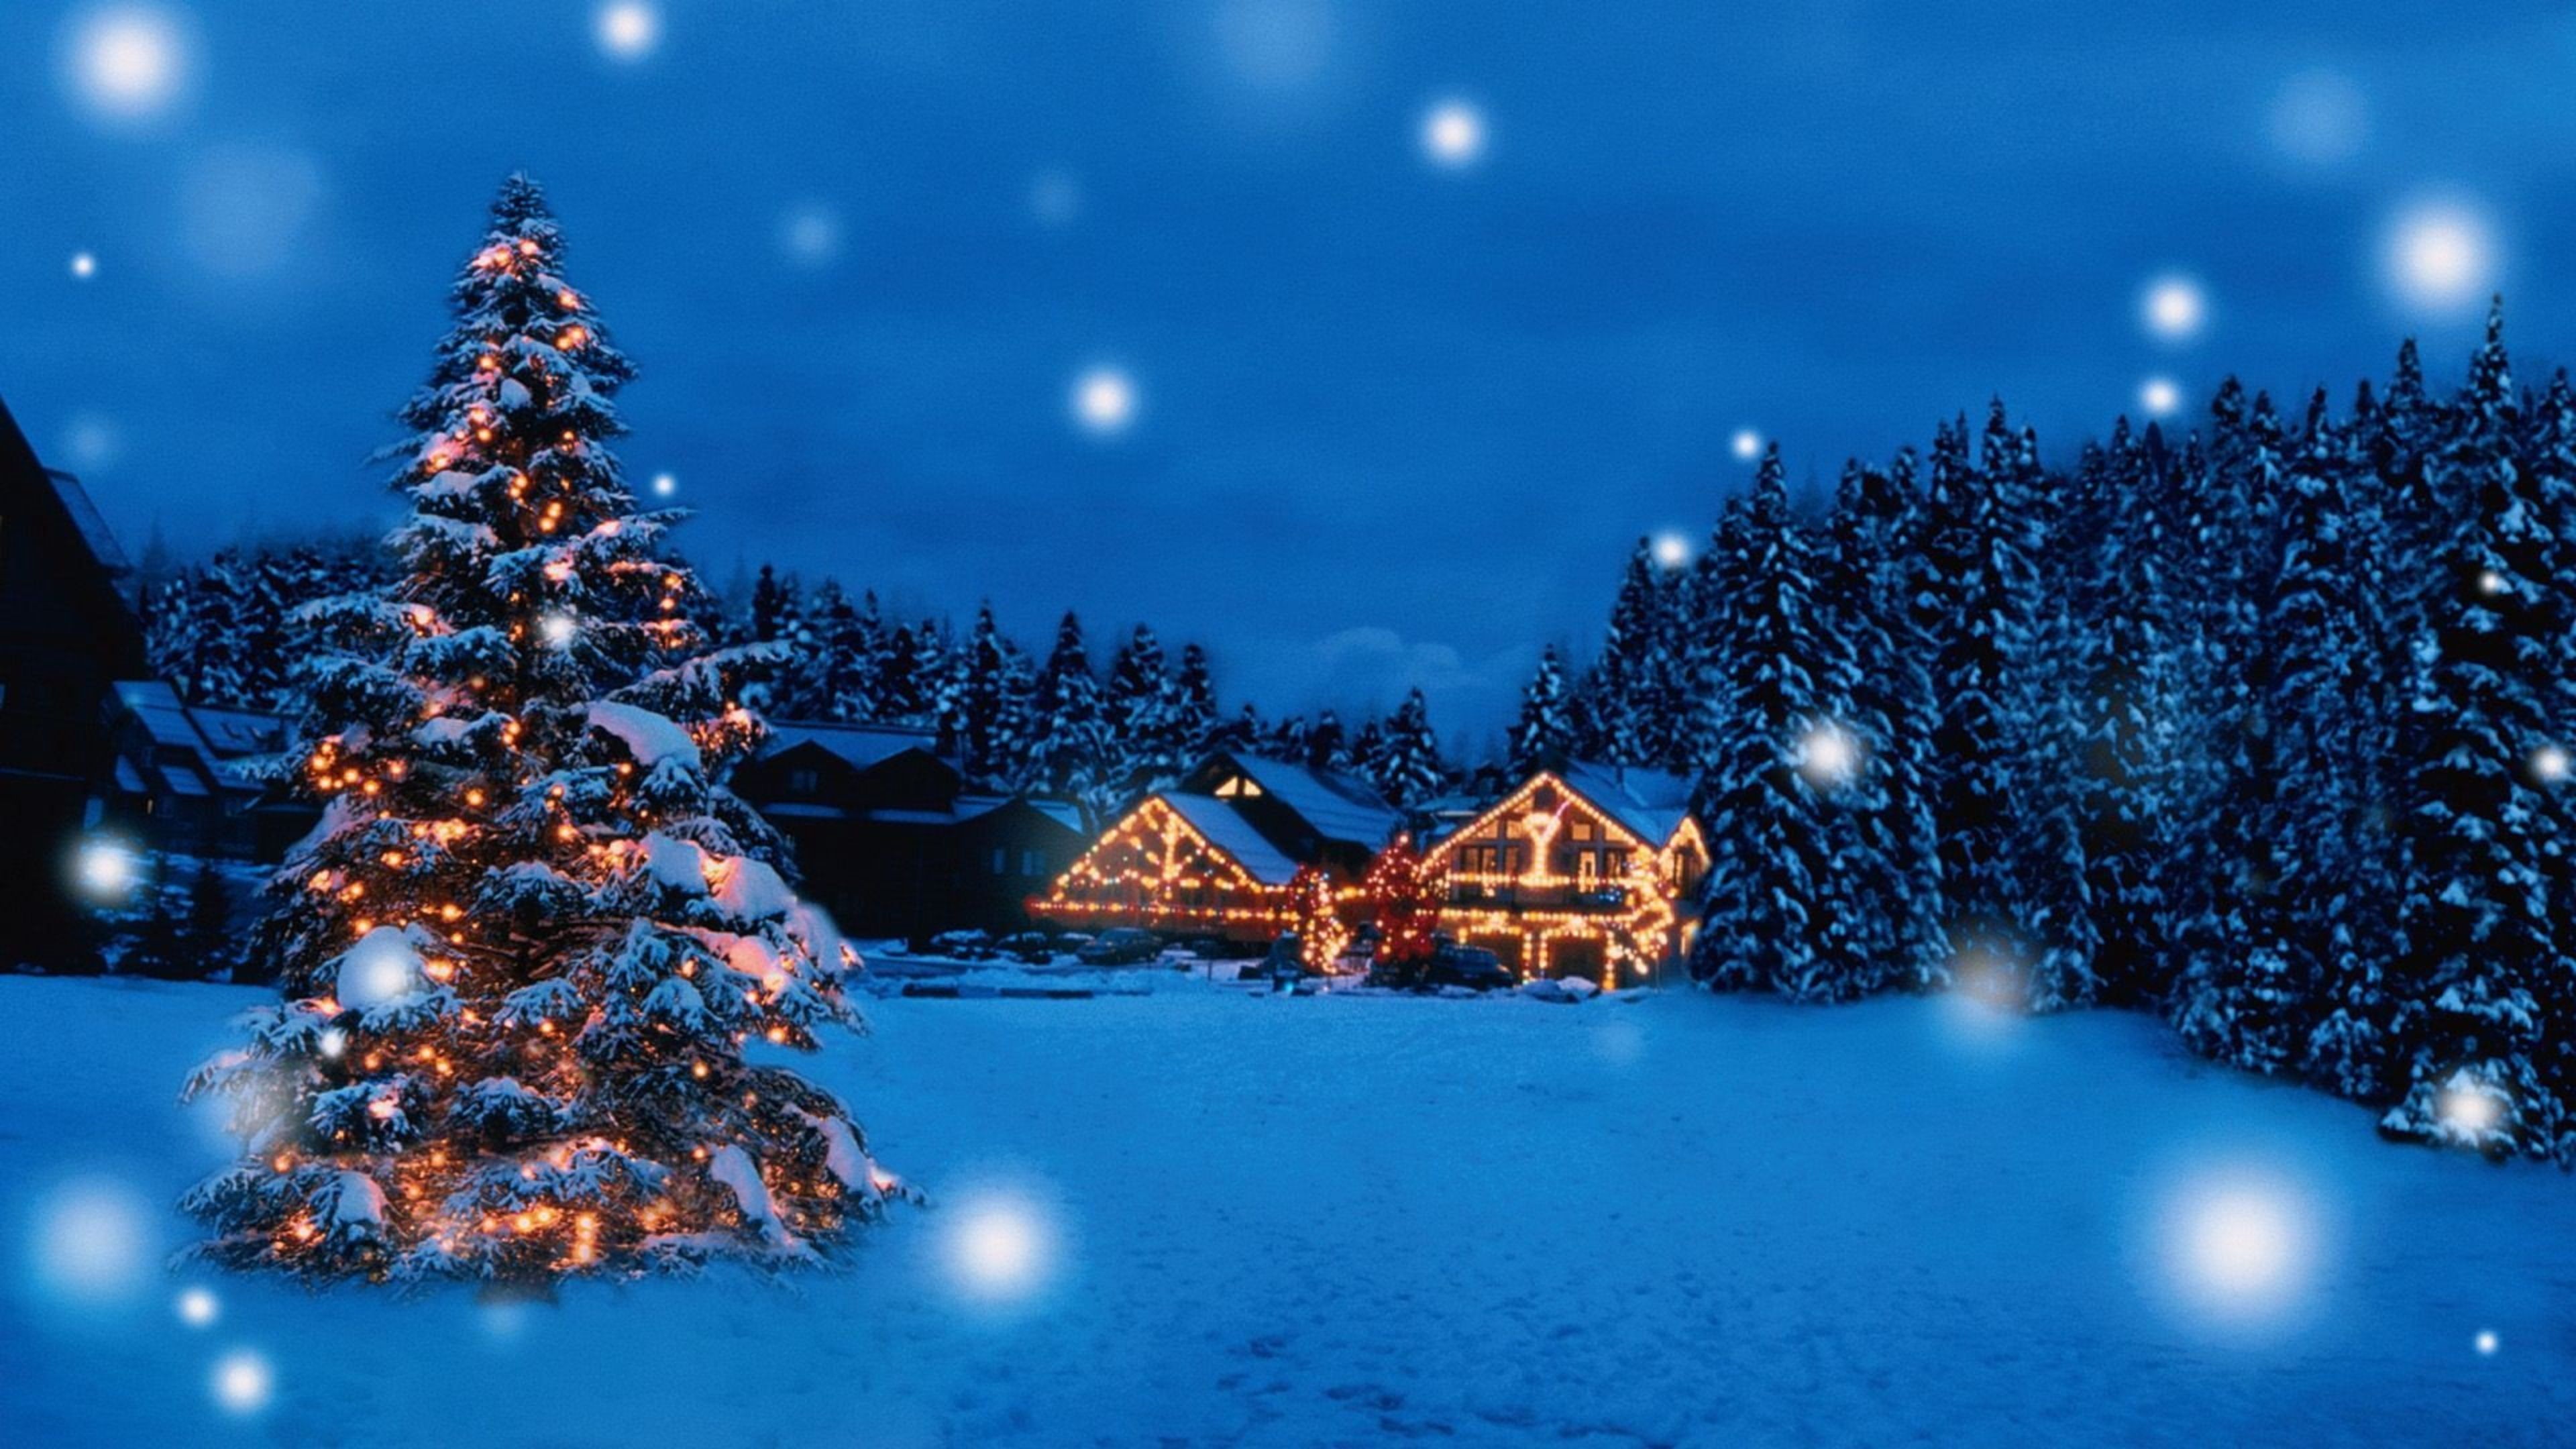 Christmas 2022 Wallpapers: Hãy tô điểm cho điện thoại hay máy tính của mình với những hình nền tuyệt đẹp và đầy ý nghĩa về mùa lễ Giáng Sinh này. Hãy tận hưởng không khí tràn đầy niềm vui và sự mới mẻ, cùng với những hình ảnh hấp dẫn và sáng tạo.